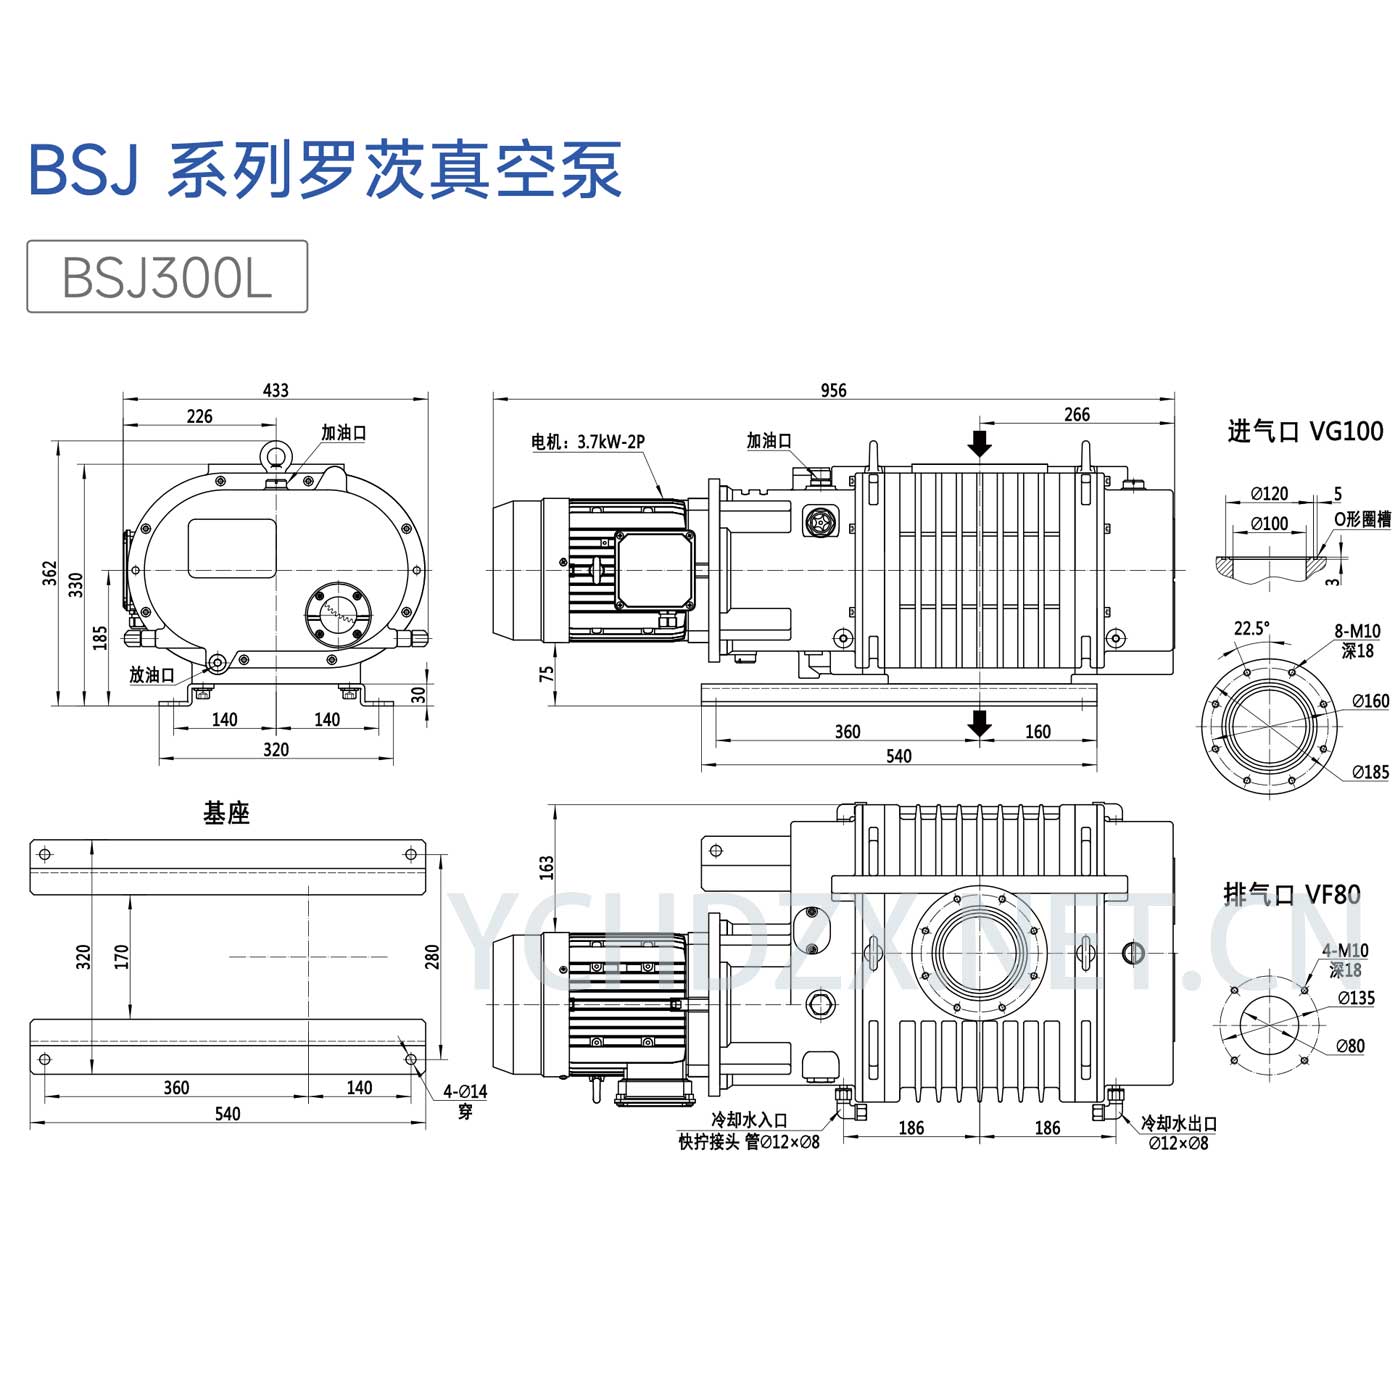 鲍斯罗茨真空泵型号BSJ300L安装尺寸图纸